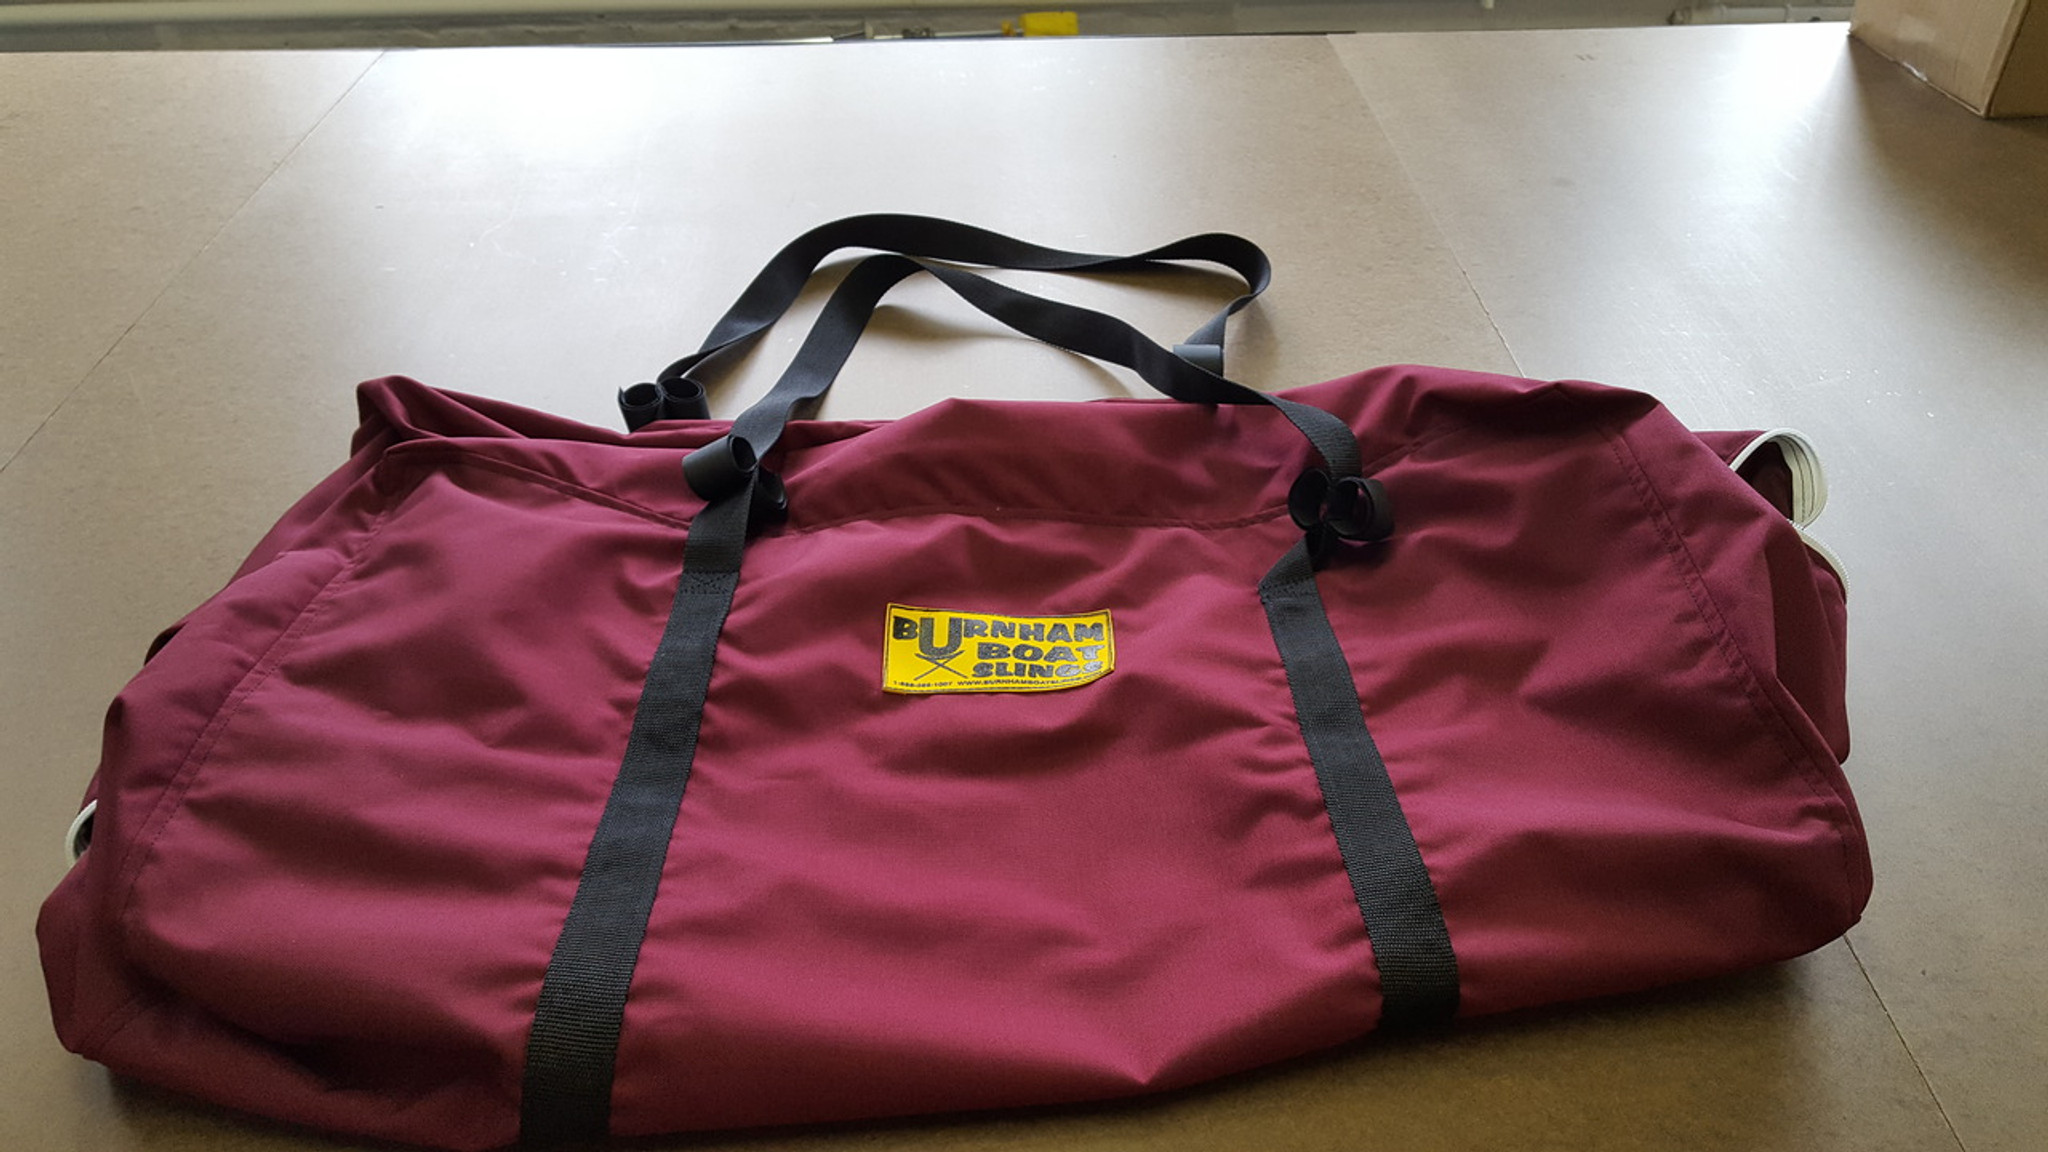 Super Industrial Sling Bag 4 PP Woven Belts Cement loading bag